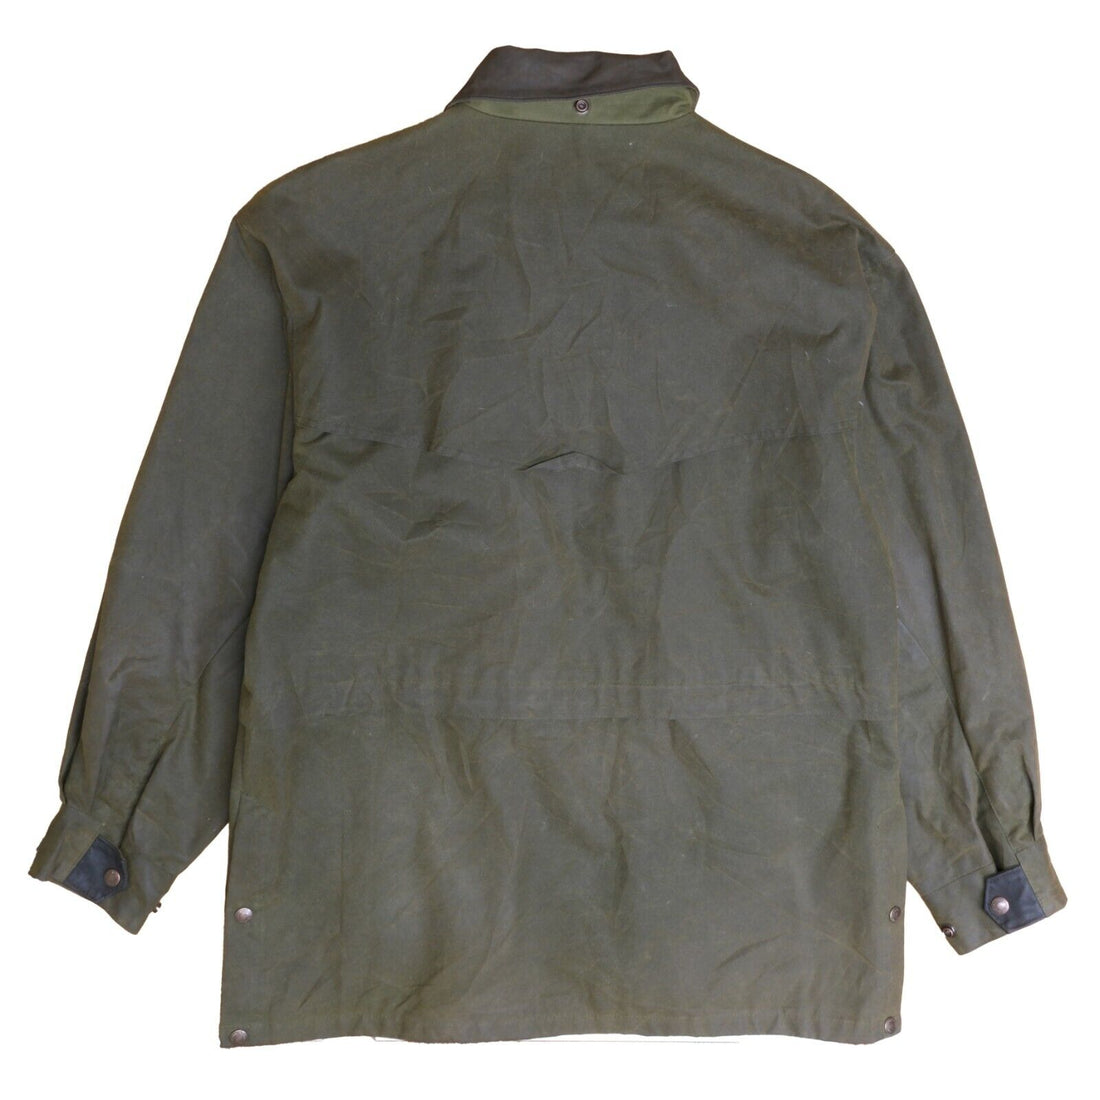 Vintage Australian Outback Wax Coat Jacket Size Large